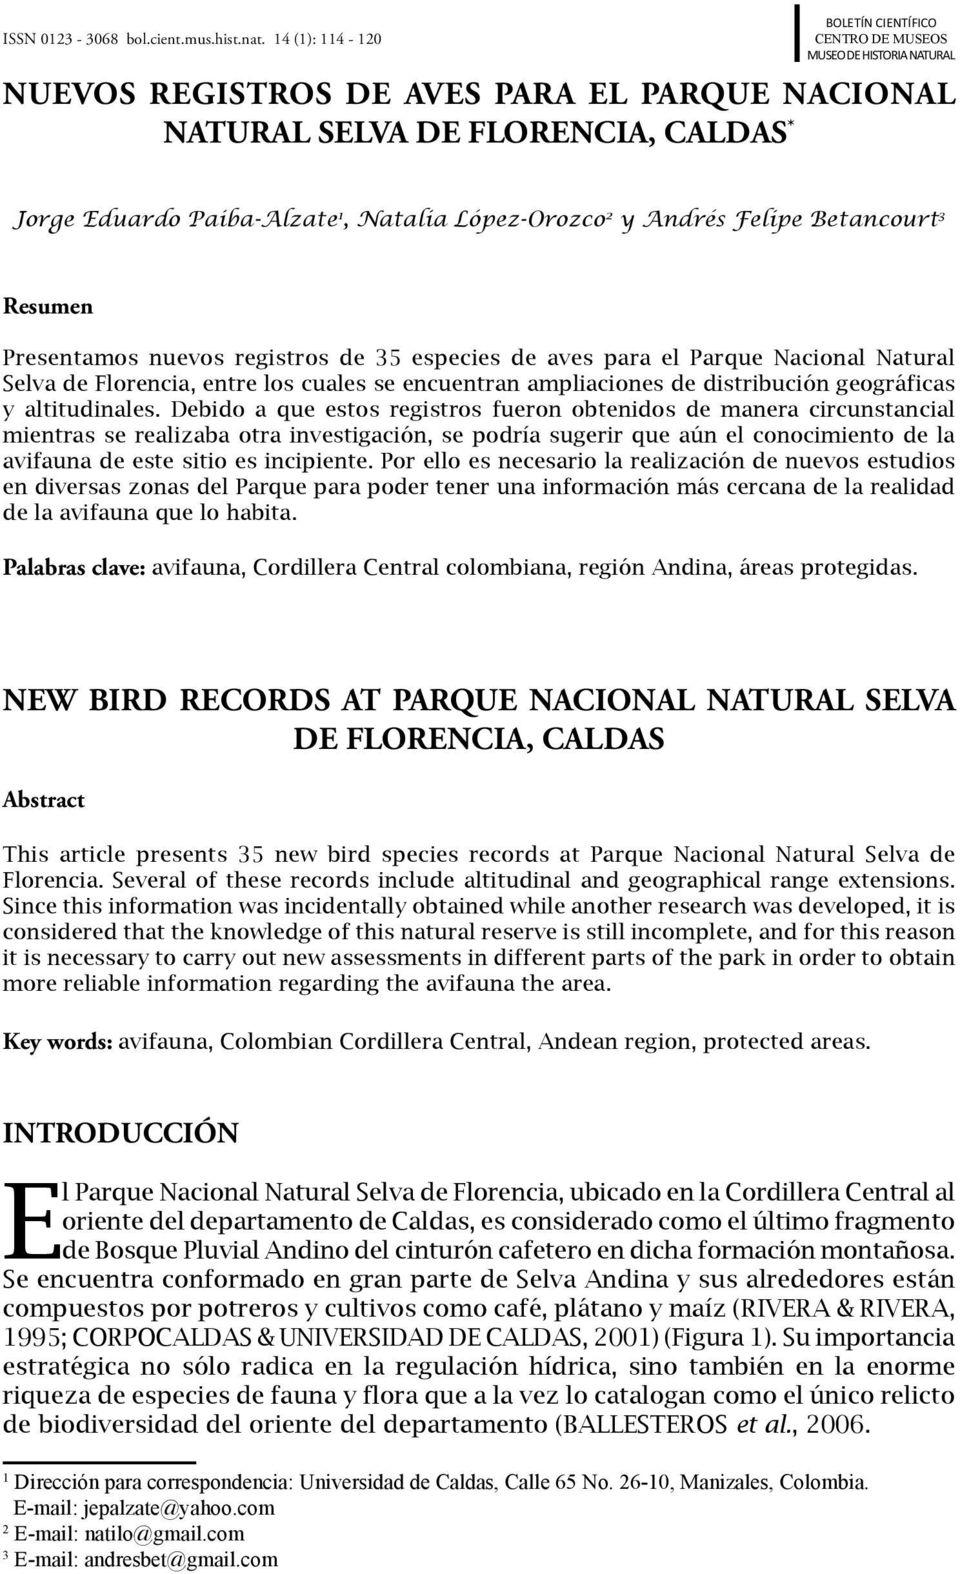 Natalia López-Orozco 2 y Andrés Felipe Betancourt 3 Resumen Presentamos nuevos registros de 35 especies de aves para el Parque Nacional Natural Selva de Florencia, entre los cuales se encuentran